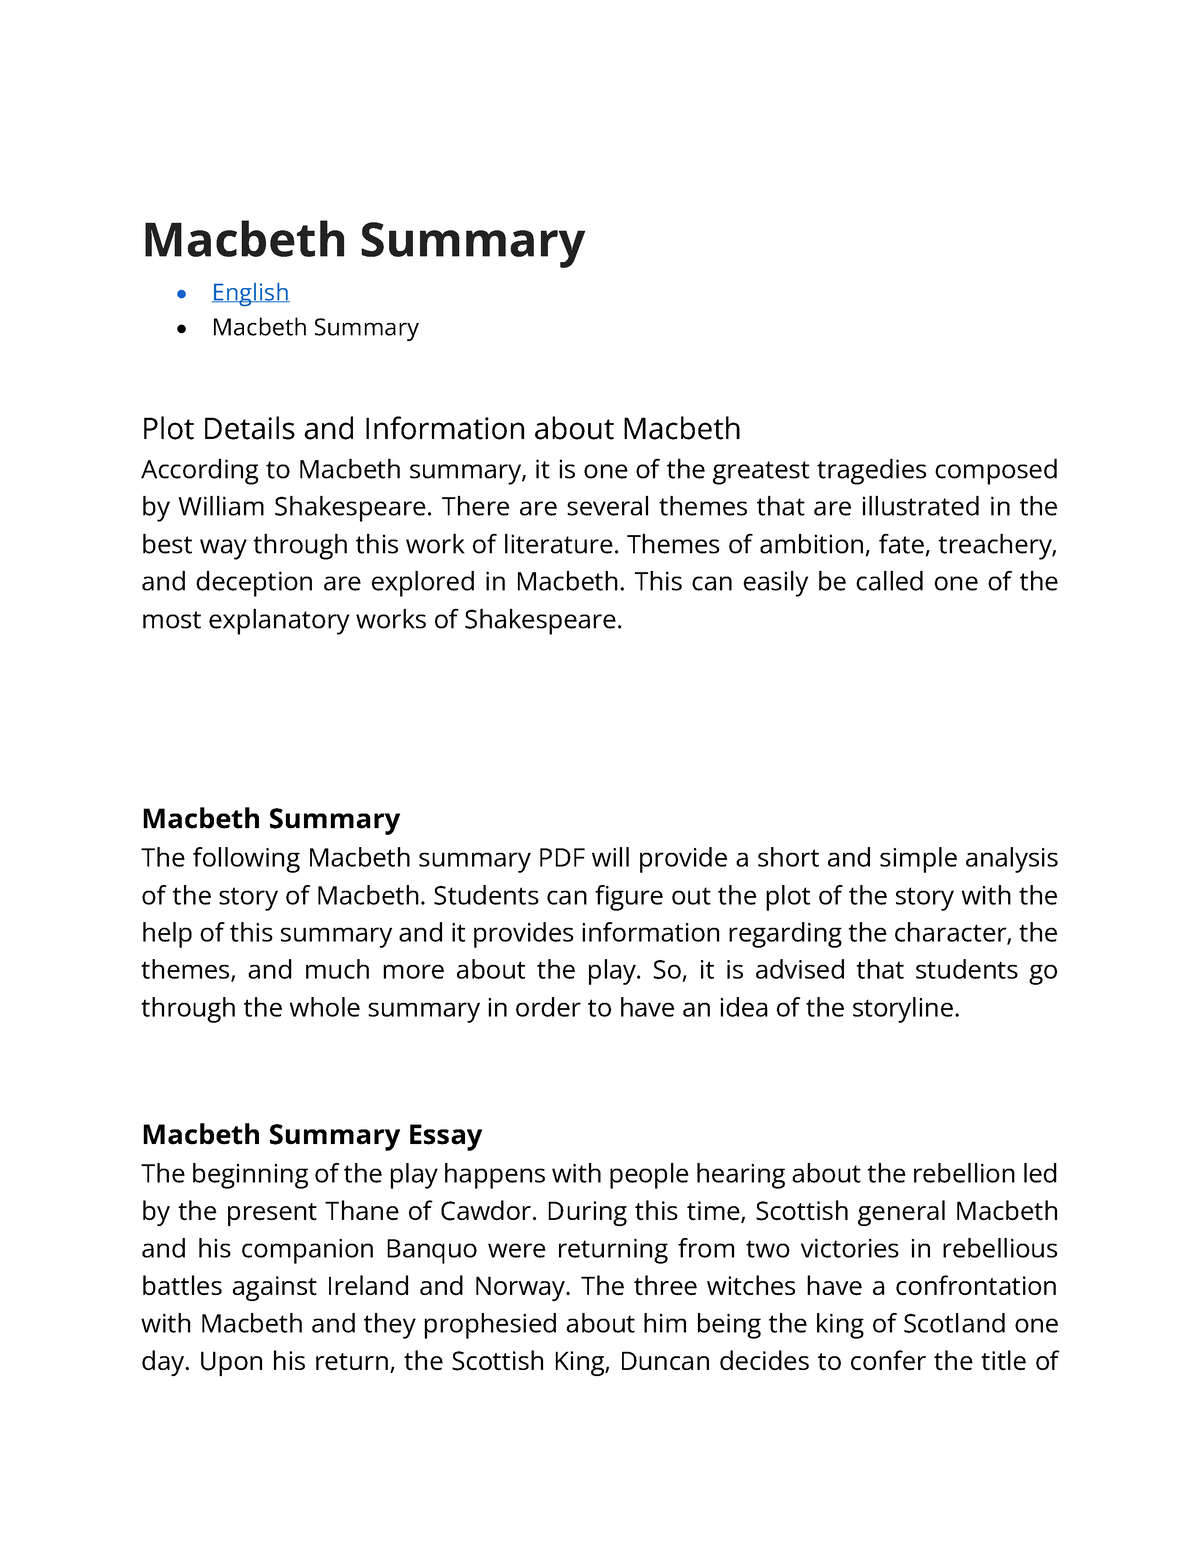 summary of macbeth essay